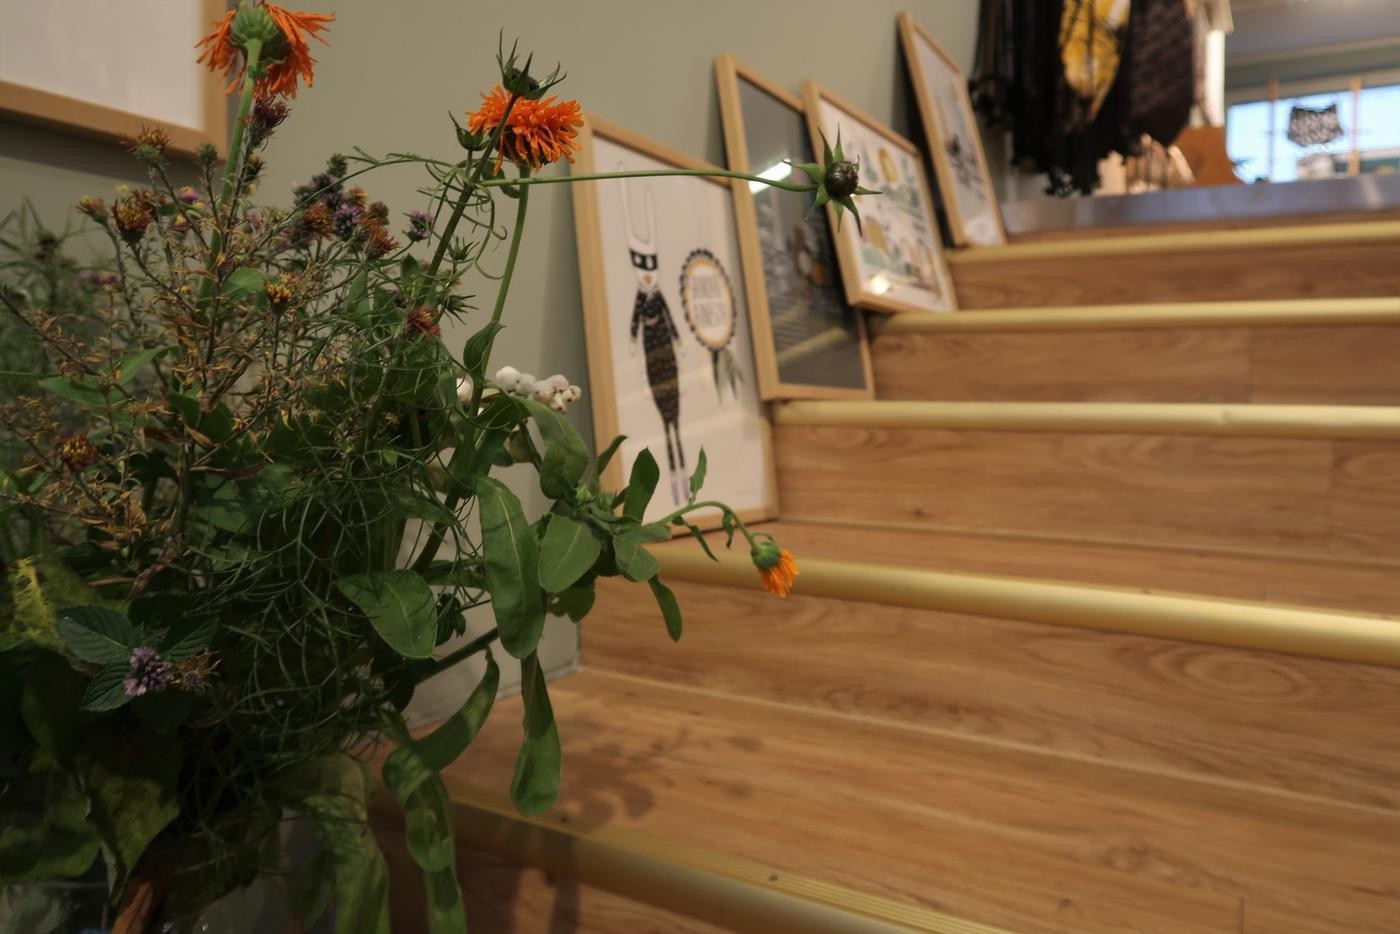 Bild av en trappa med tavlor och grönsväxter uppställda.